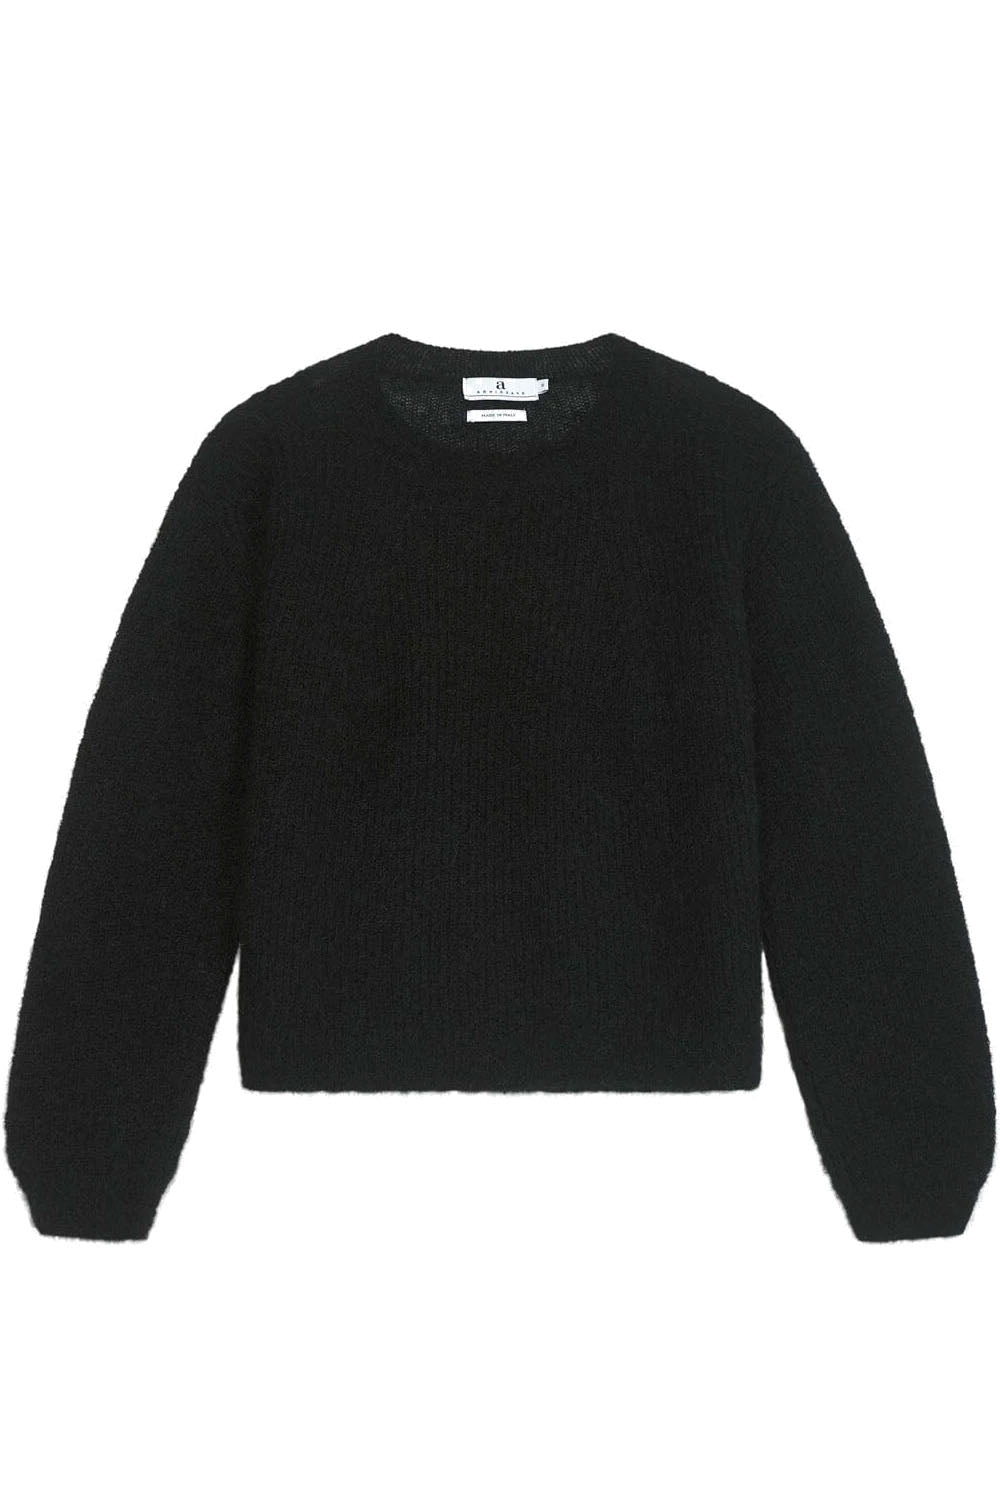 Lane Sweater Black